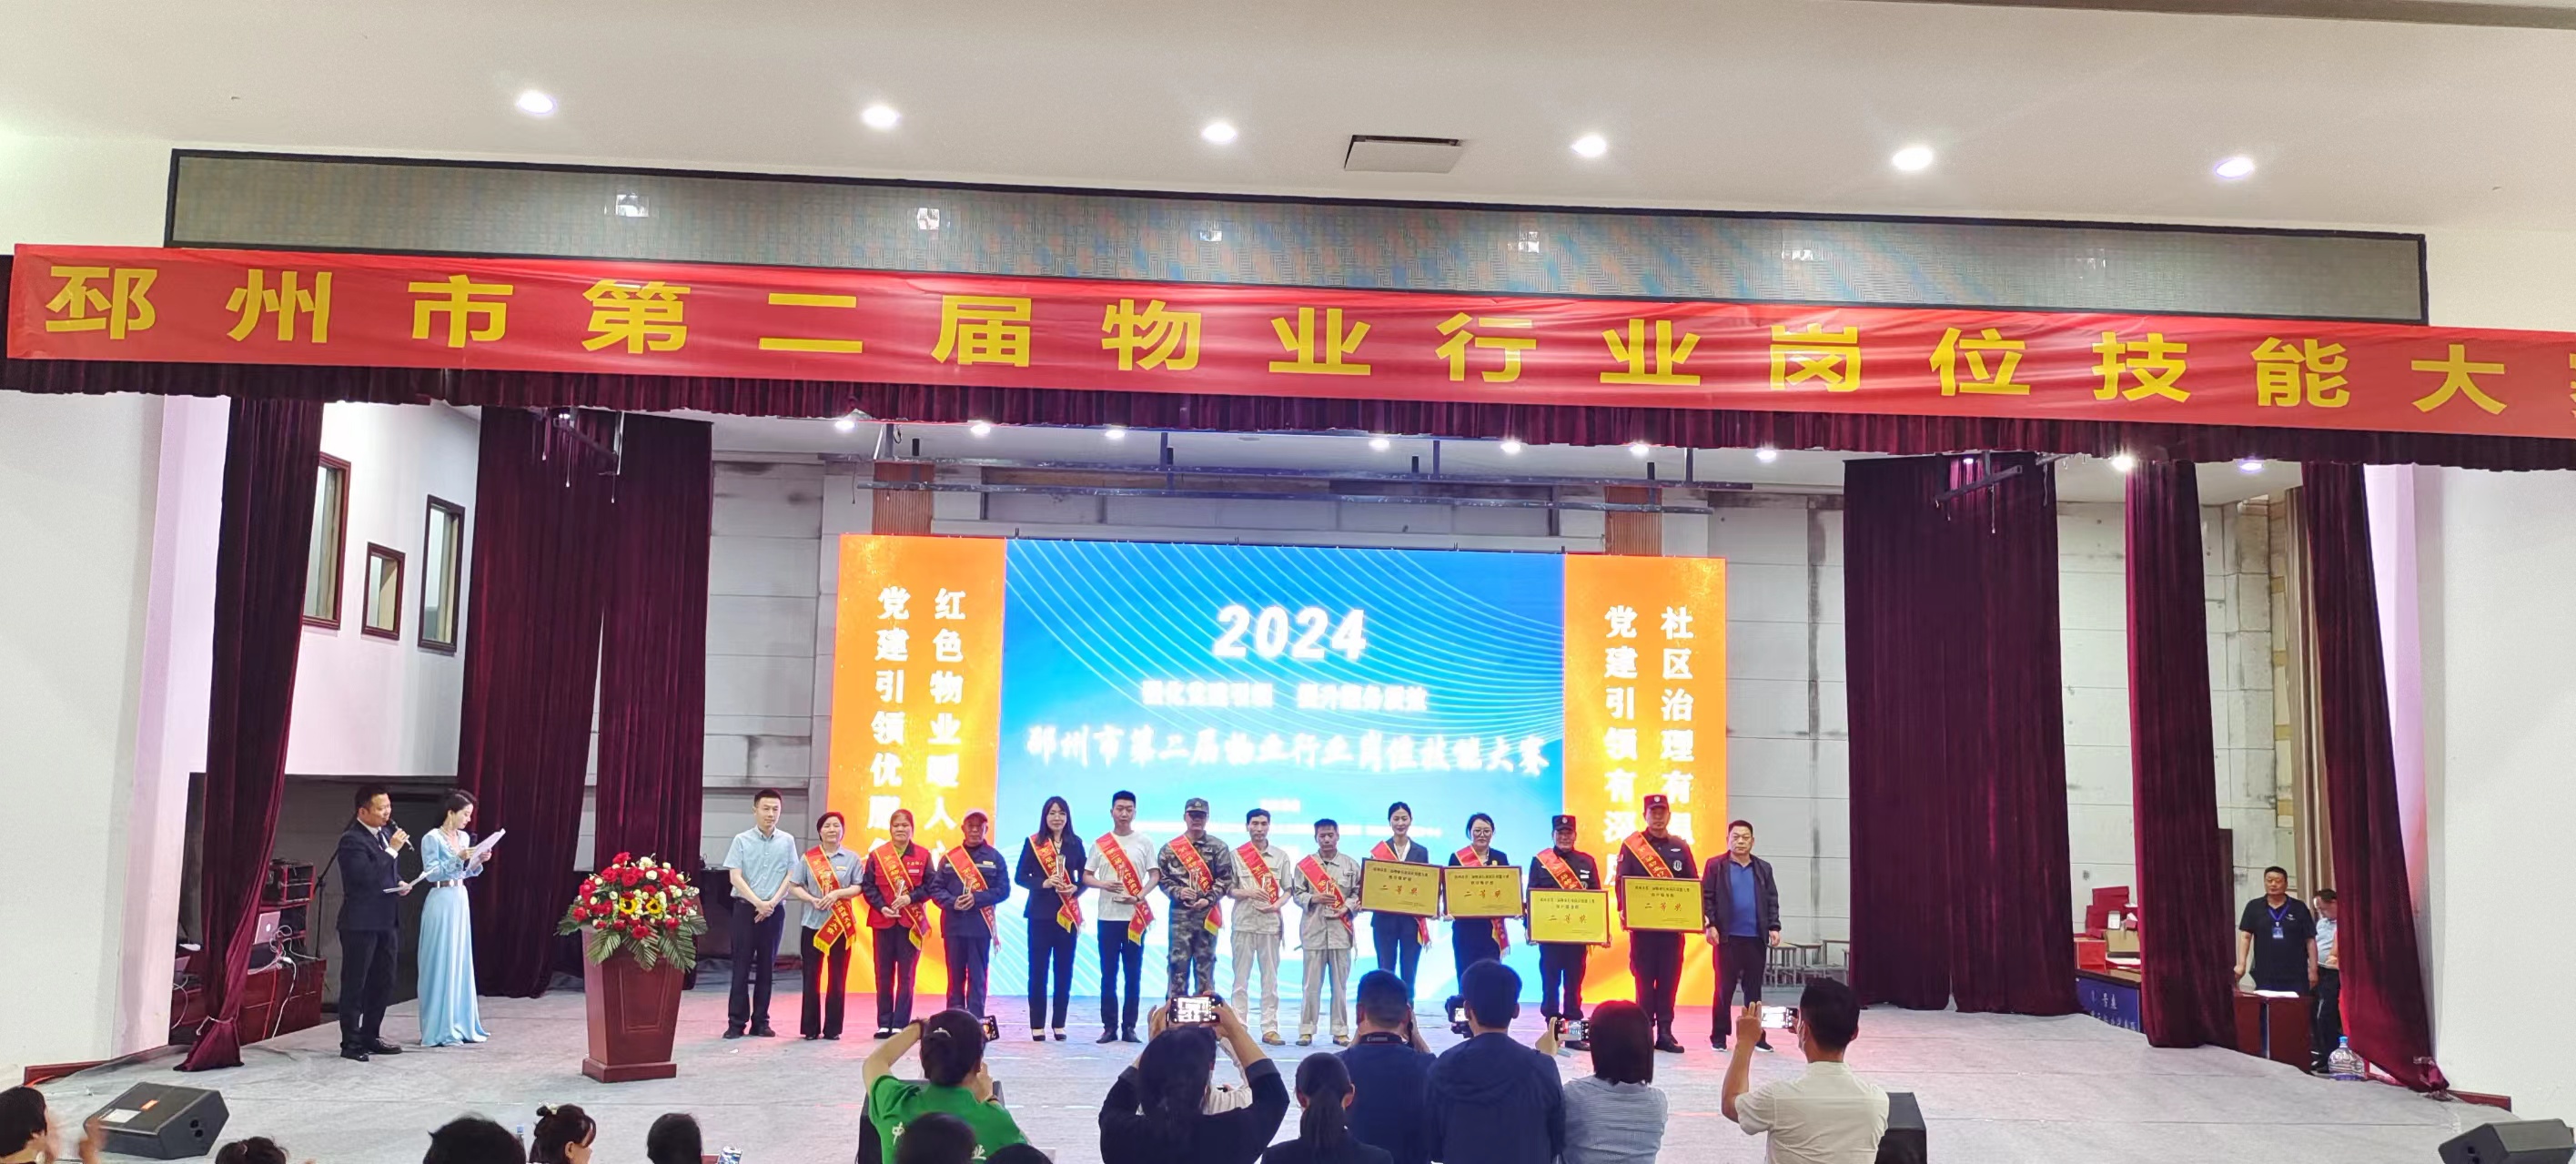 邳州市物业行业第二届技能大赛 嘉园物业荣获奖牌